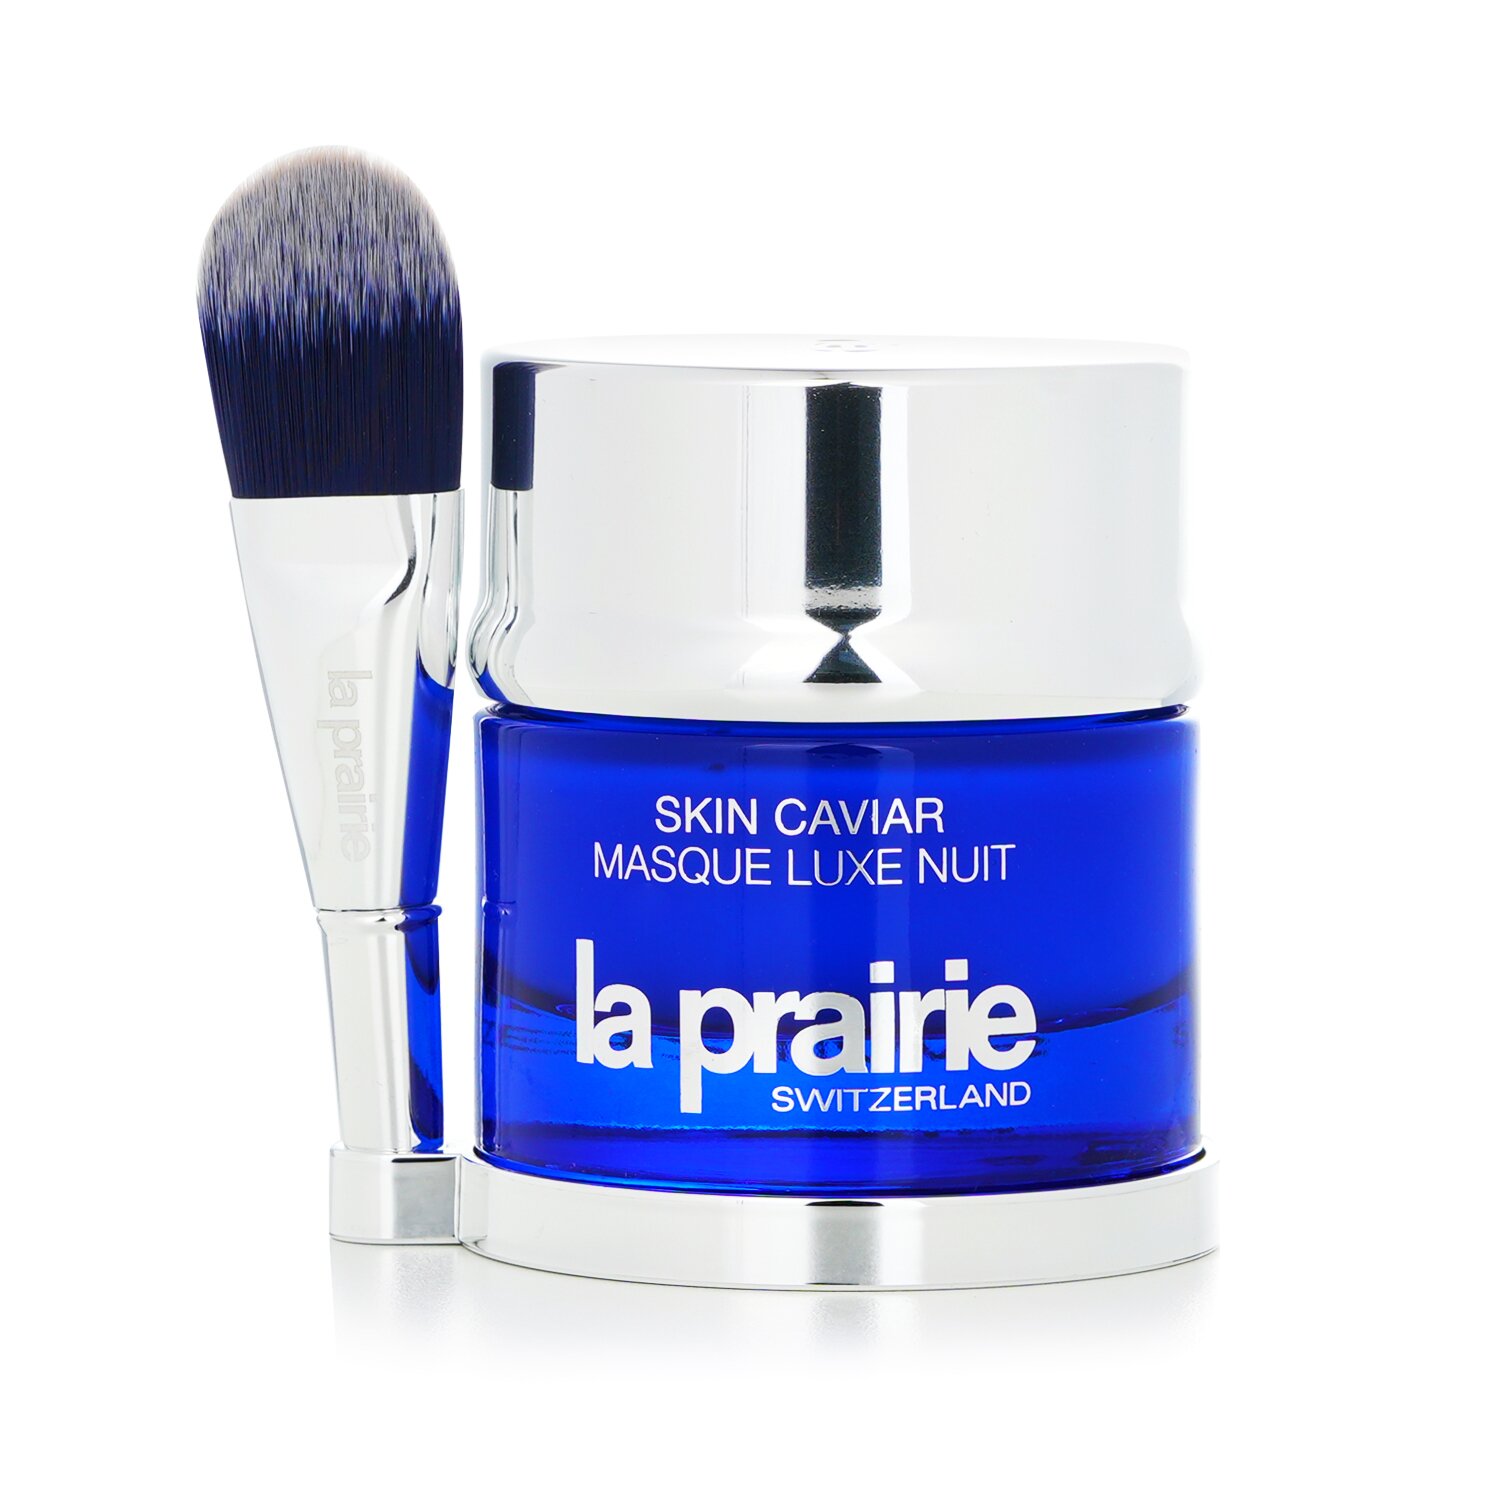 La Prairie Маска за сън Skin Caviar Luxe 50ml/1.7oz